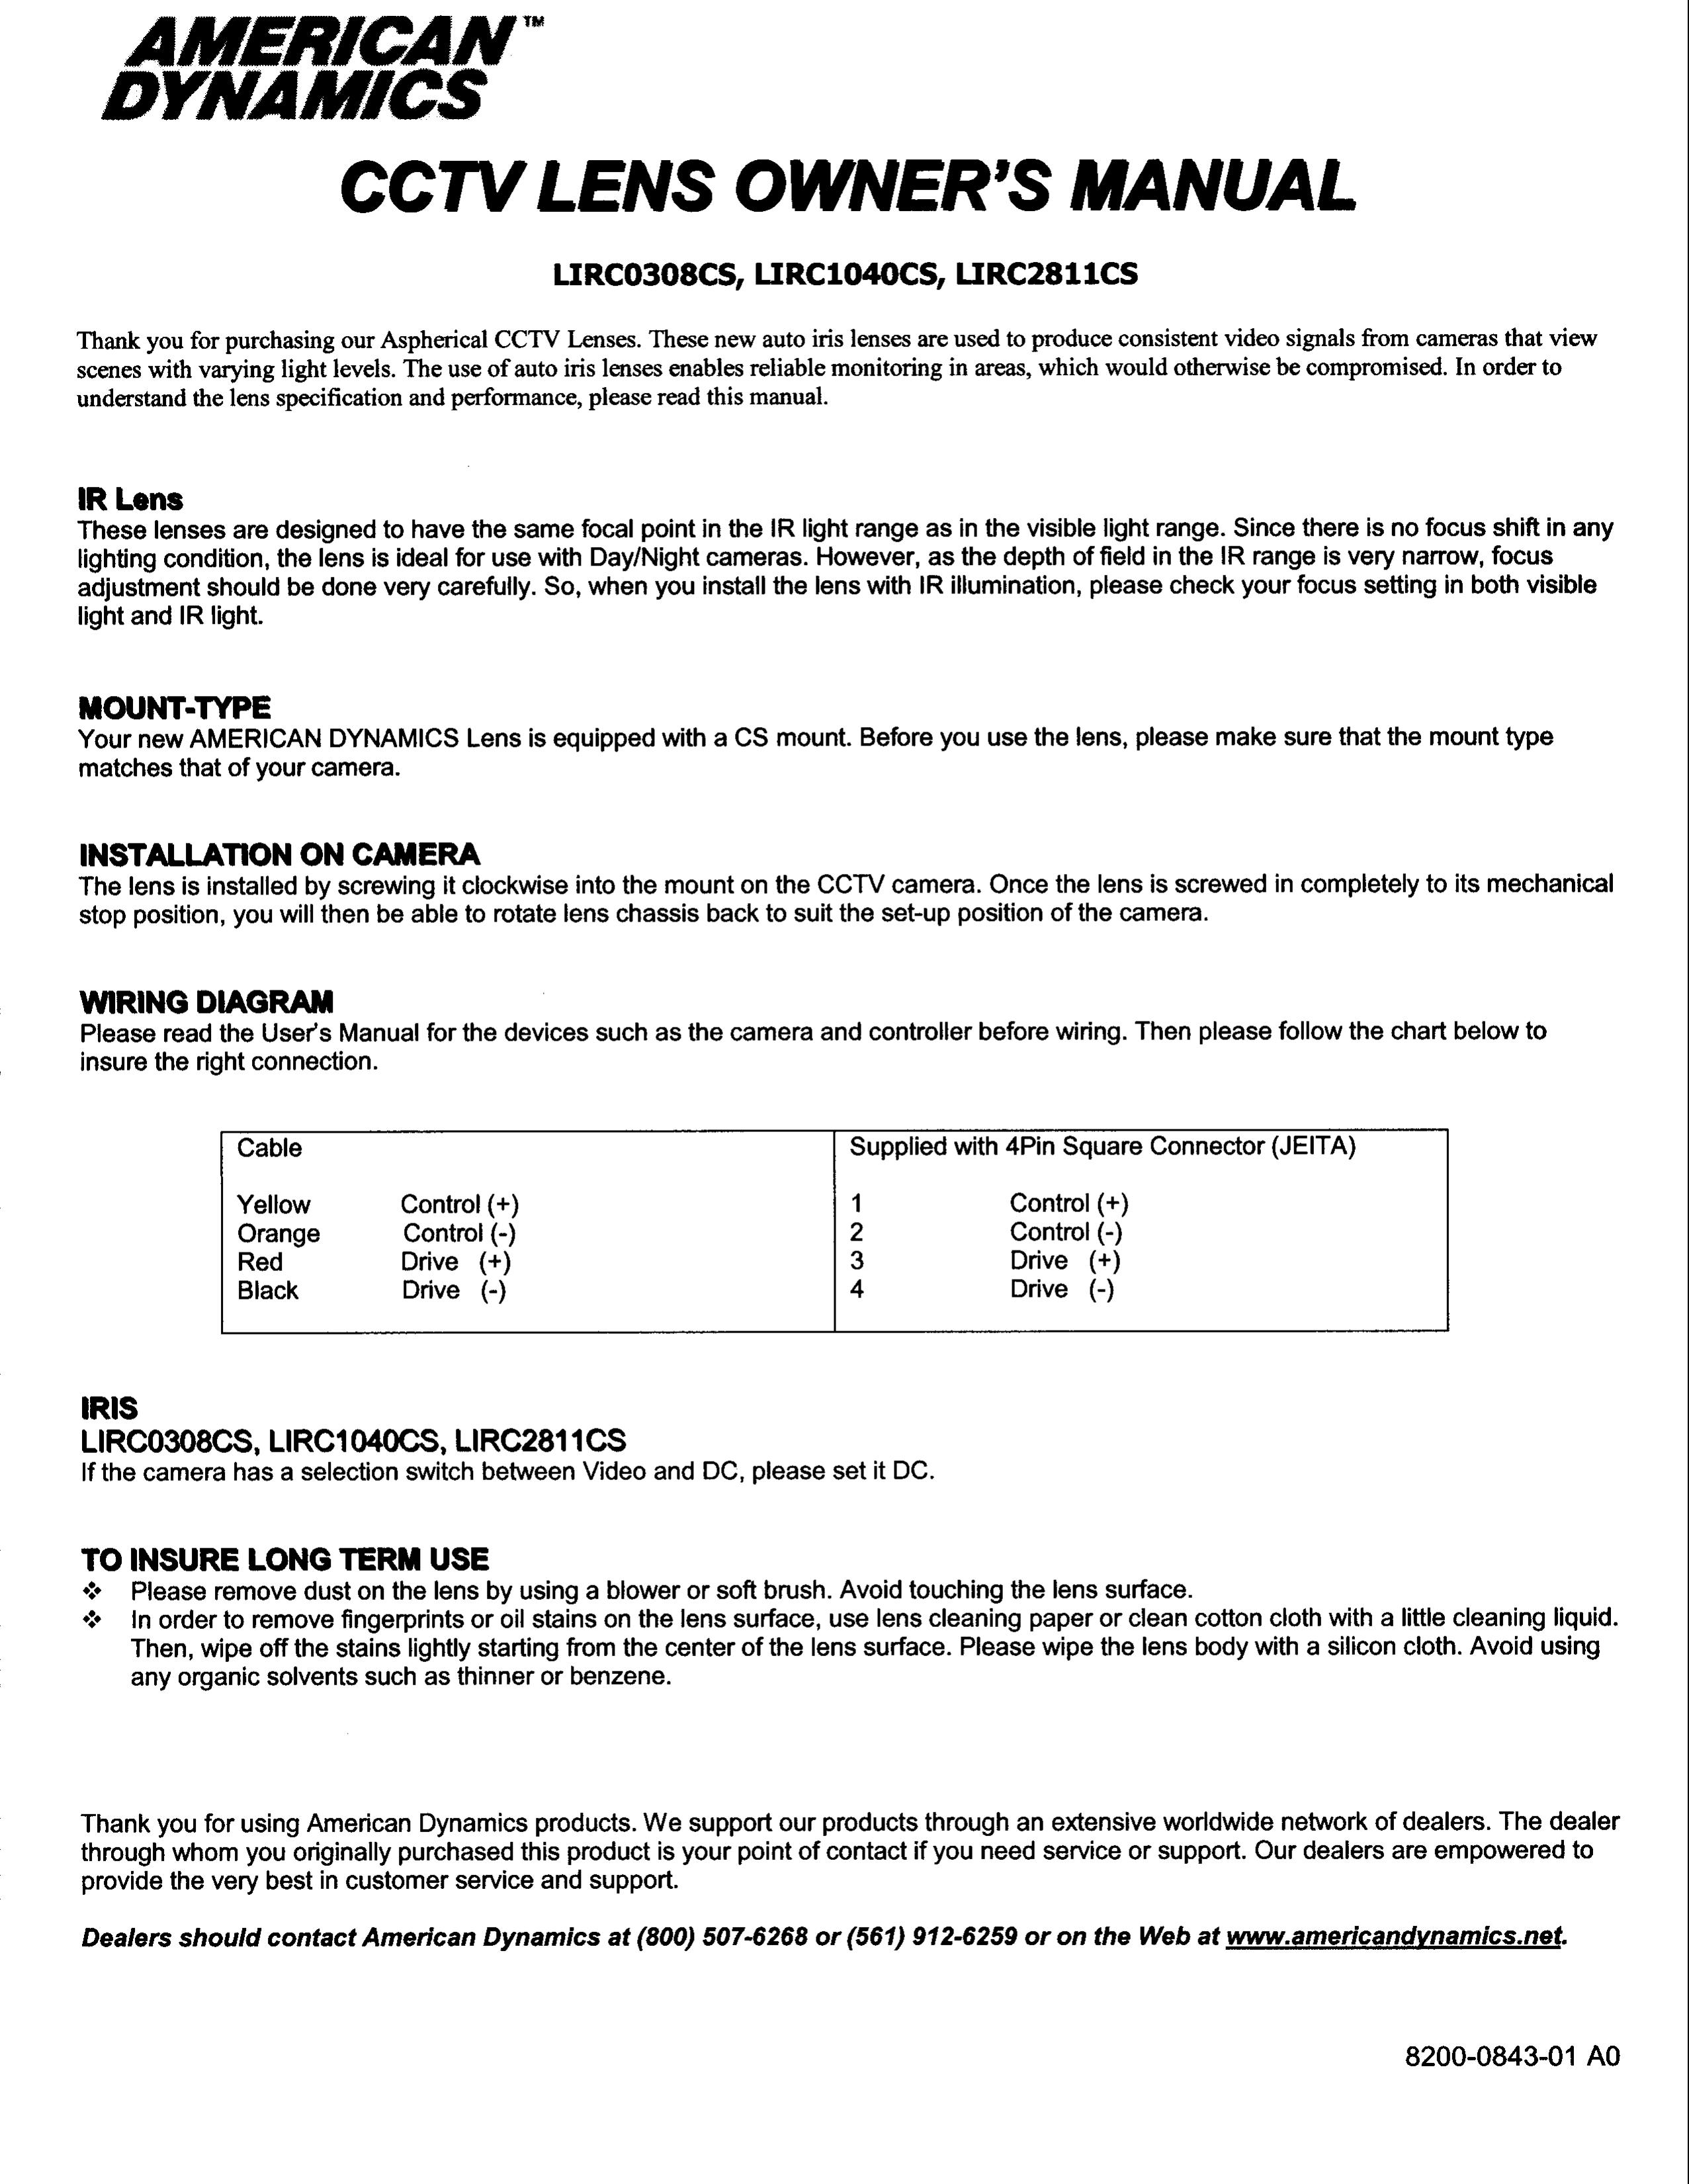 American Dynamics LIRC1040CS Camera Lens User Manual